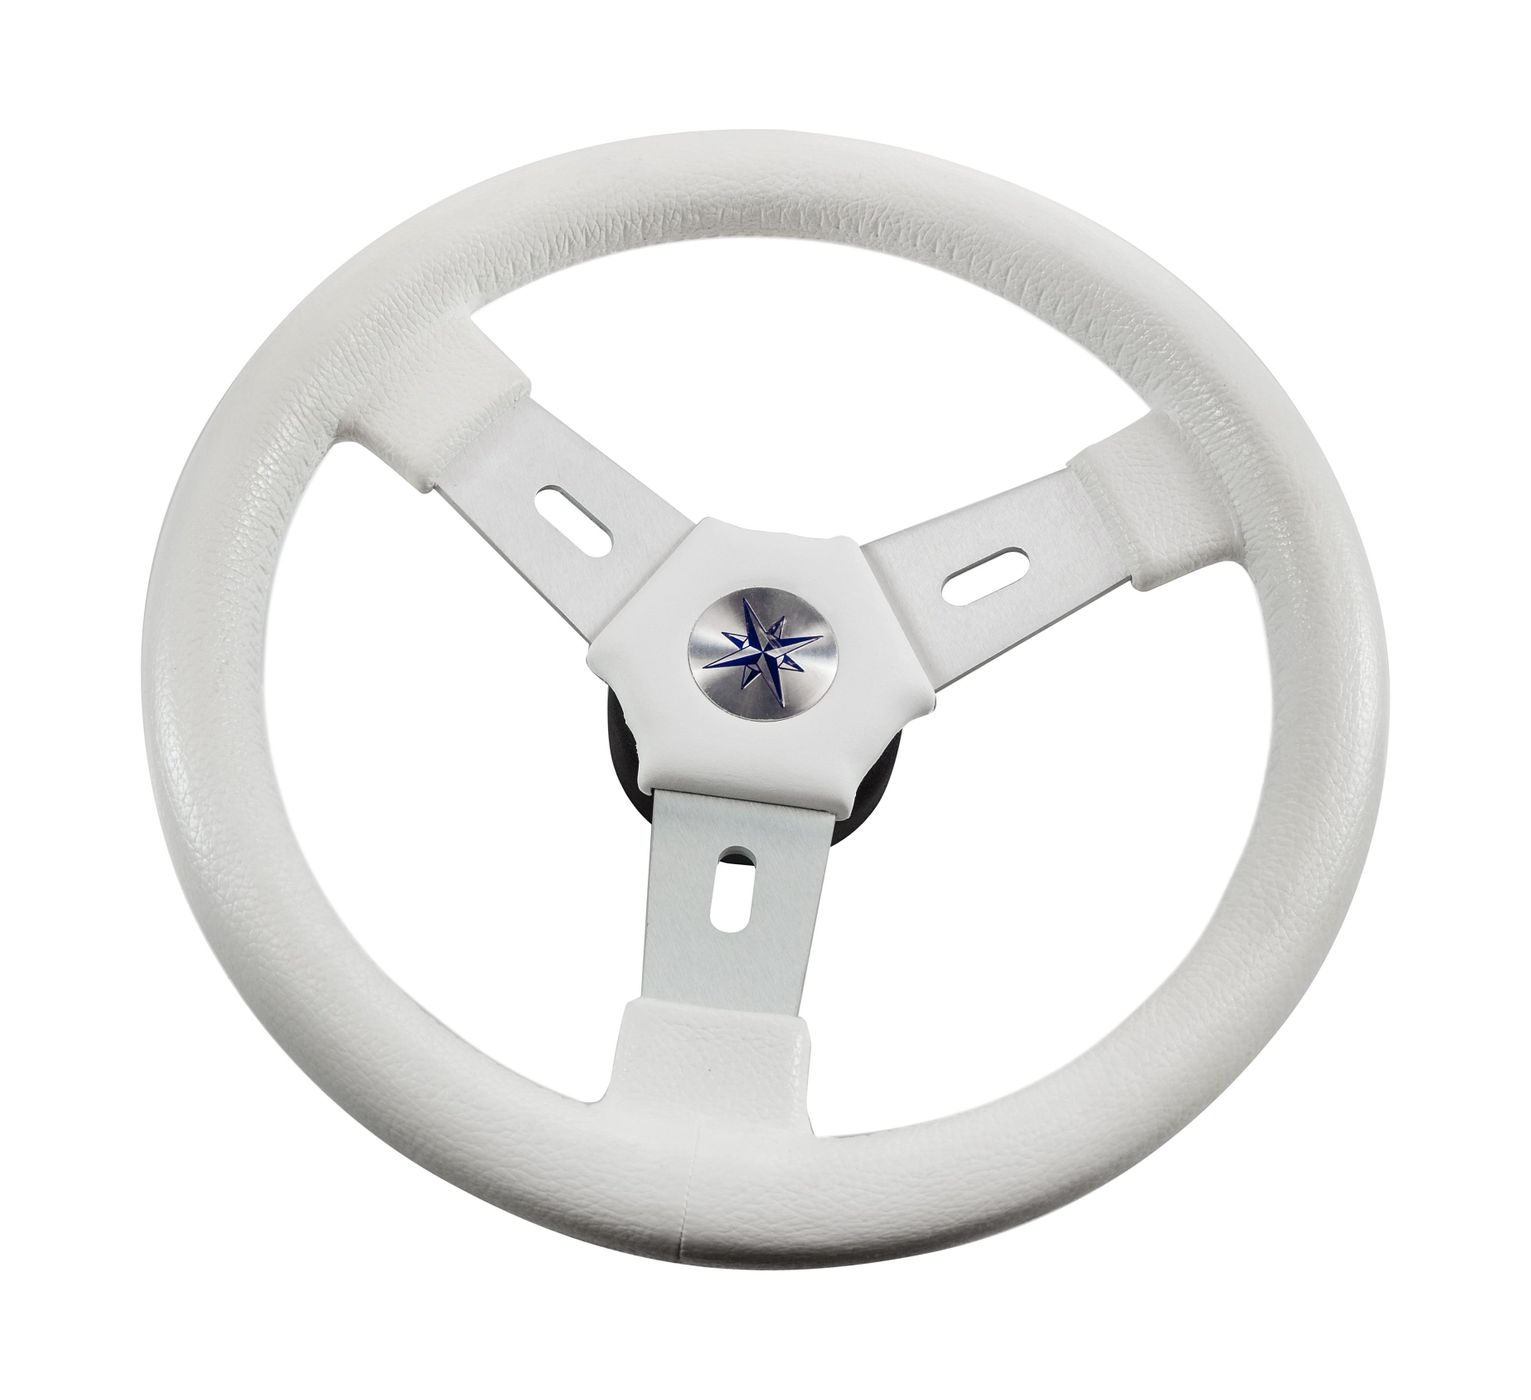 Рулевое колесо ELBA обод белый, спицы серебрянные д.320 мм VN70311-08 рулевое колесо evolution белый обод с карбоновыми вставками more 10016468